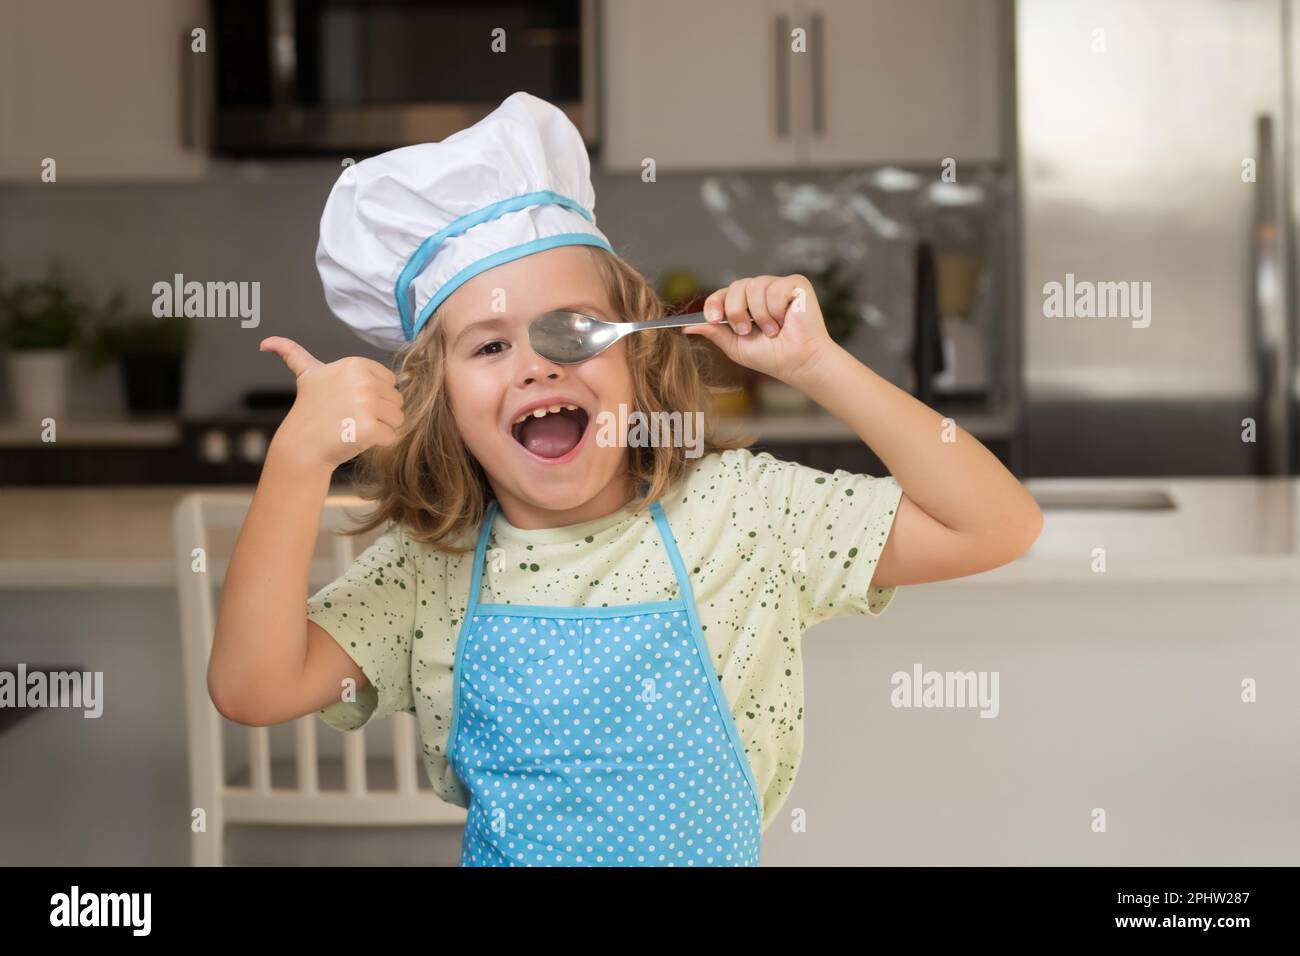 Divertido cocinero niño pequeño usando gorro uniforme de cocina y delantal  de comida cocida en la cocina. Los niños están preparando la masa,  cocinando galletas en la cocina Fotografía de stock -